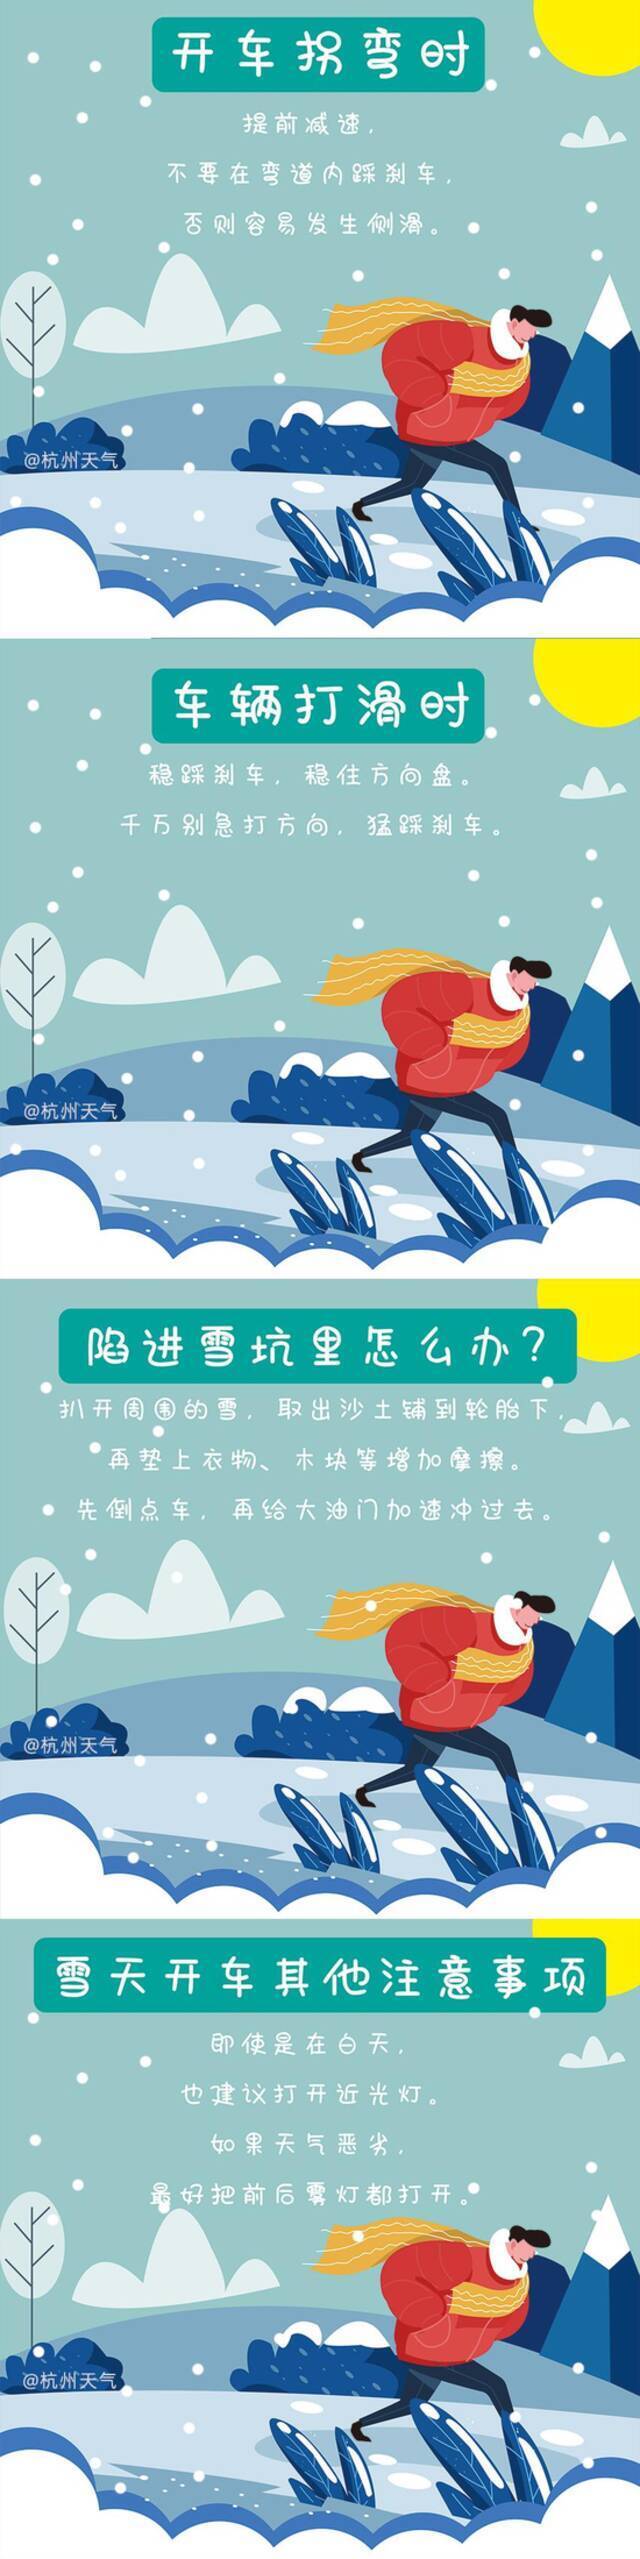 鹅毛大雪来了！杭州多地发布暴雪预警：山区有中到大雪局部暴雪